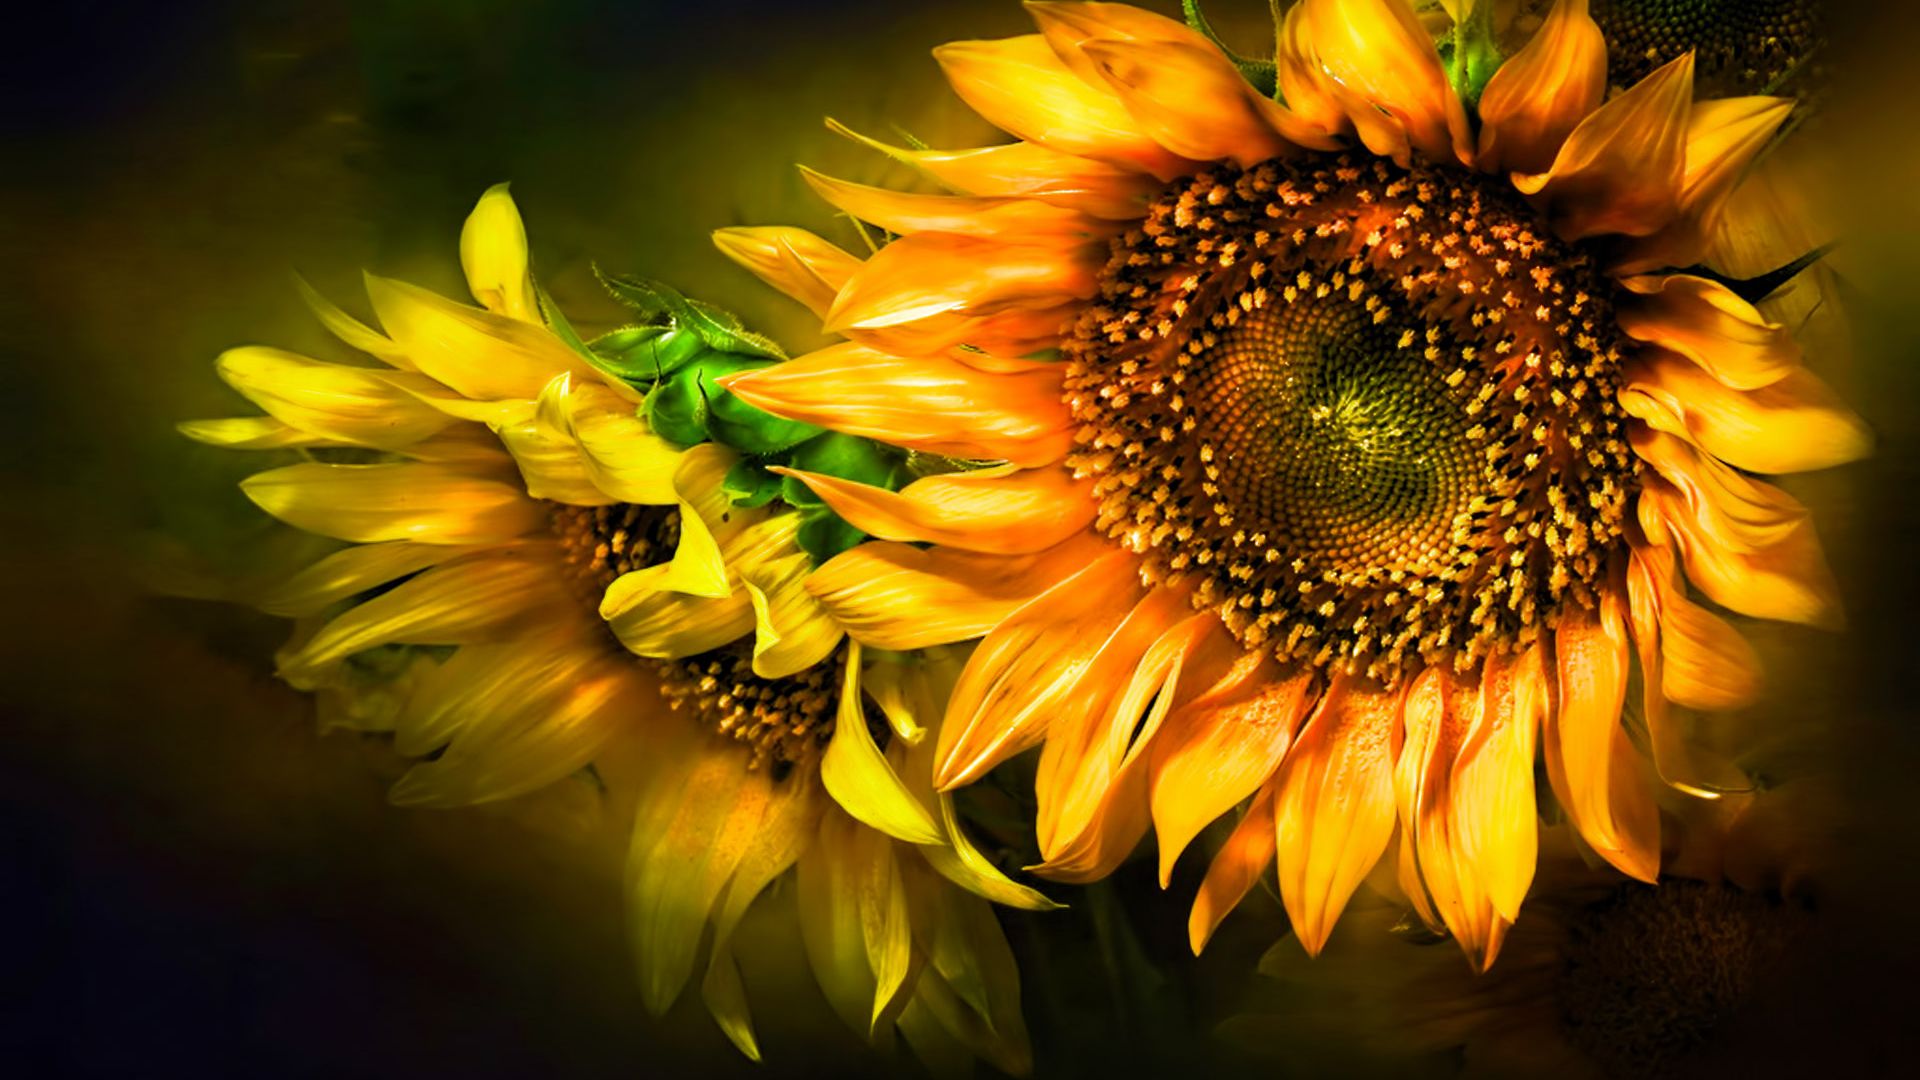 Sunflower Hd - Sunflower Wallpaper For Desktop - HD Wallpaper 